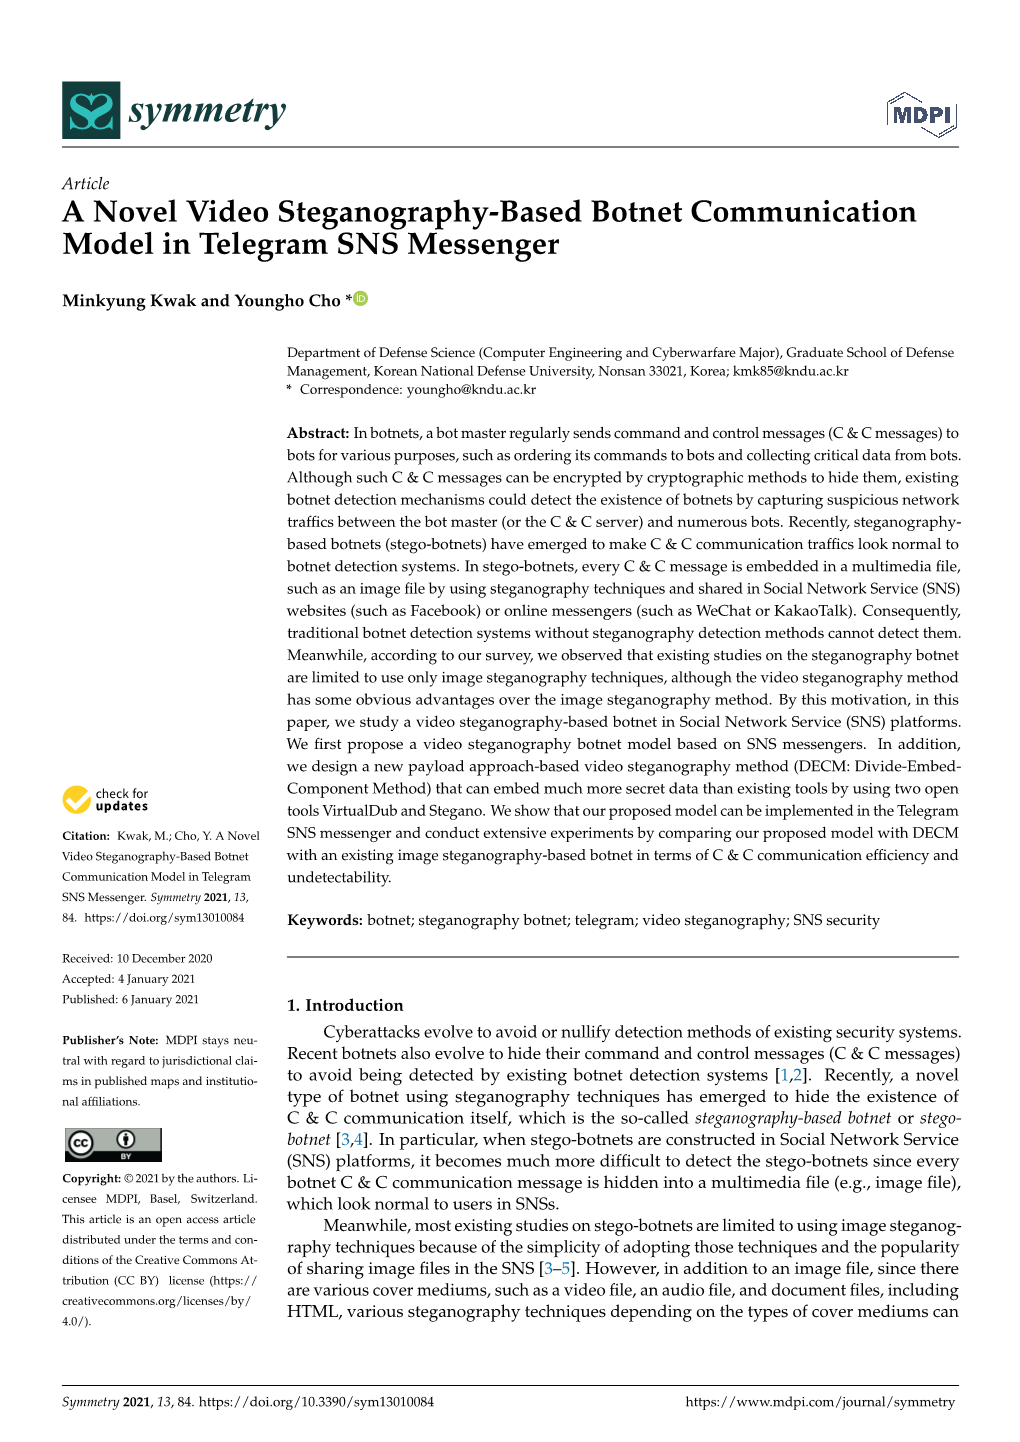 A Novel Video Steganography-Based Botnet Communication Model in Telegram SNS Messenger